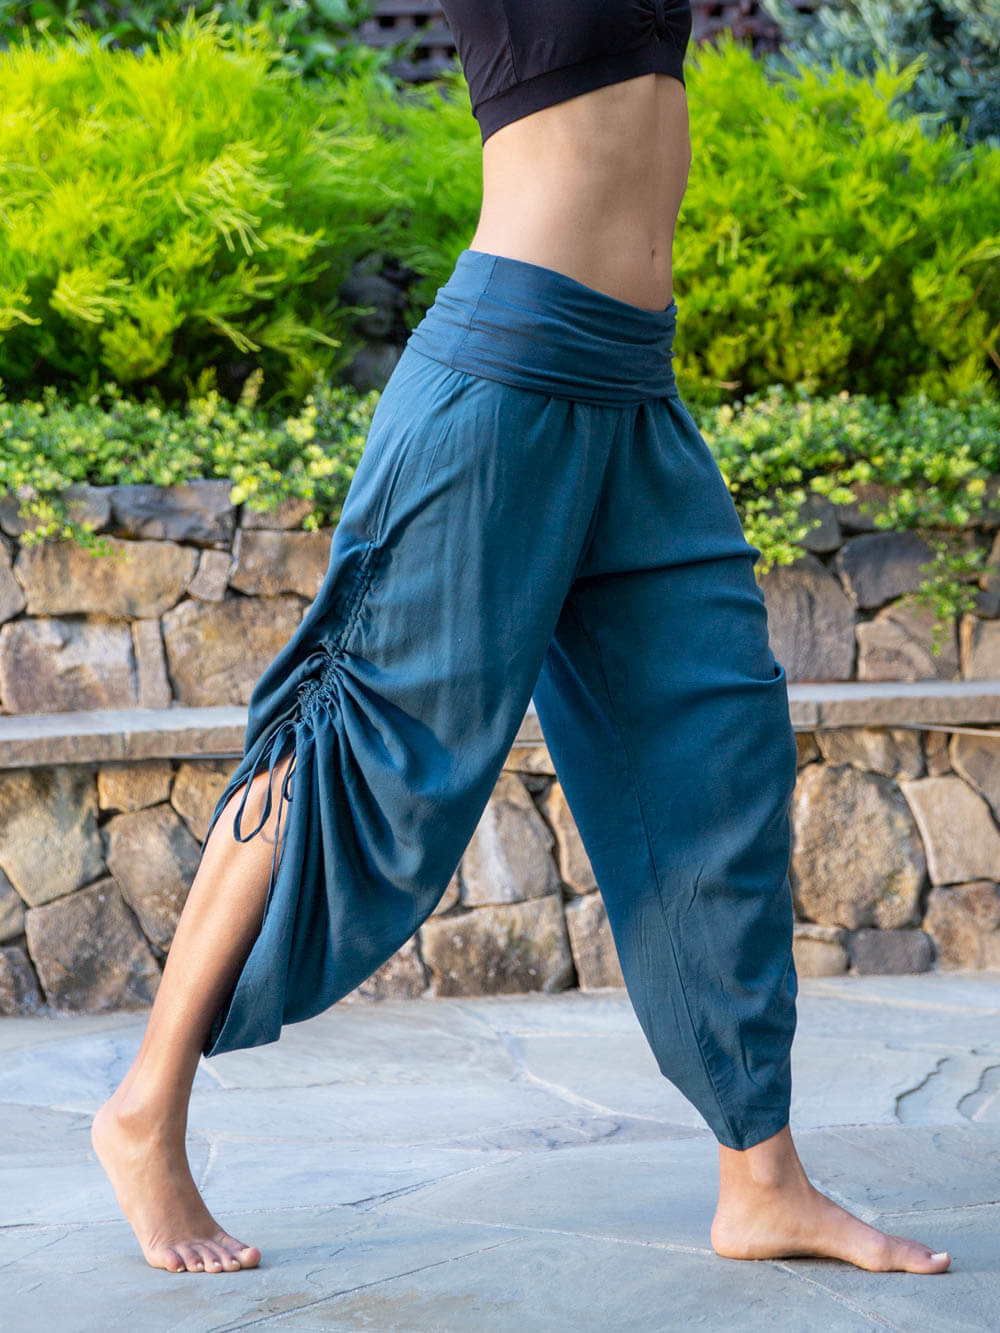 KAM Yoga Pants Women Unique Yoga Wear Sport Dance Pants 